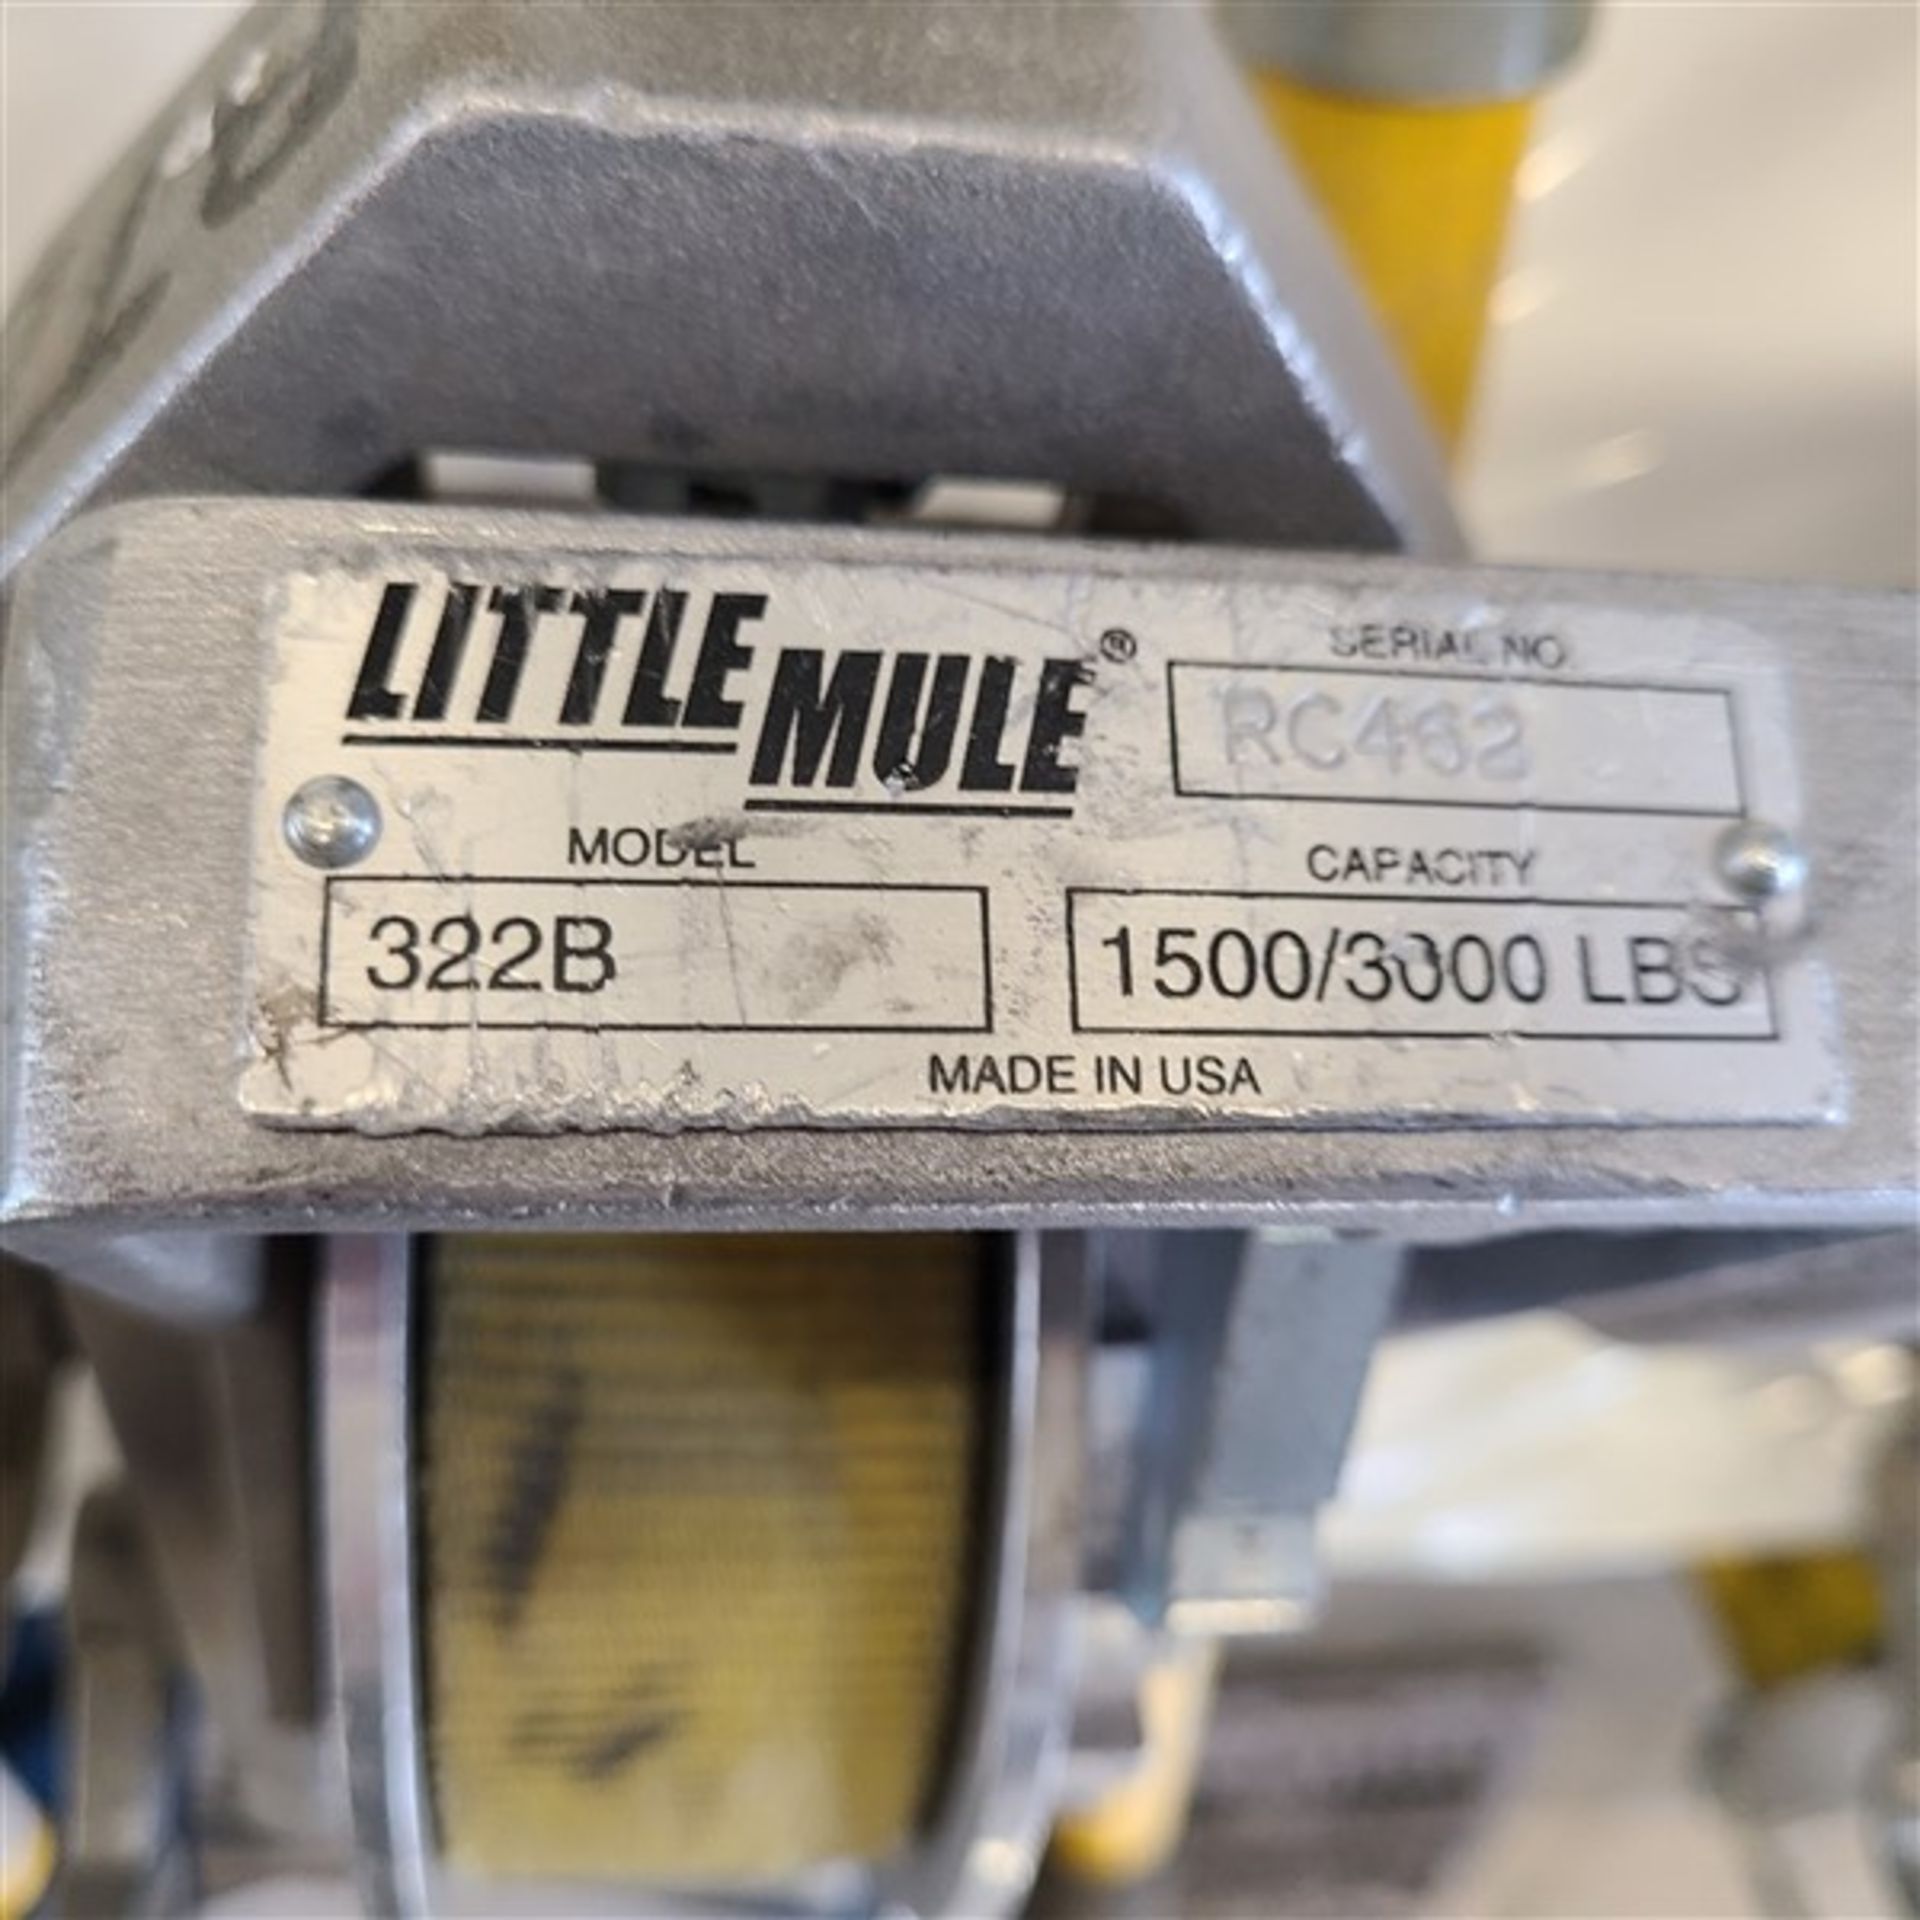 LITTLE MULE MOD. 322B LINEMANS STRAP HOIST, 1500/3000LB CAP - Image 2 of 2